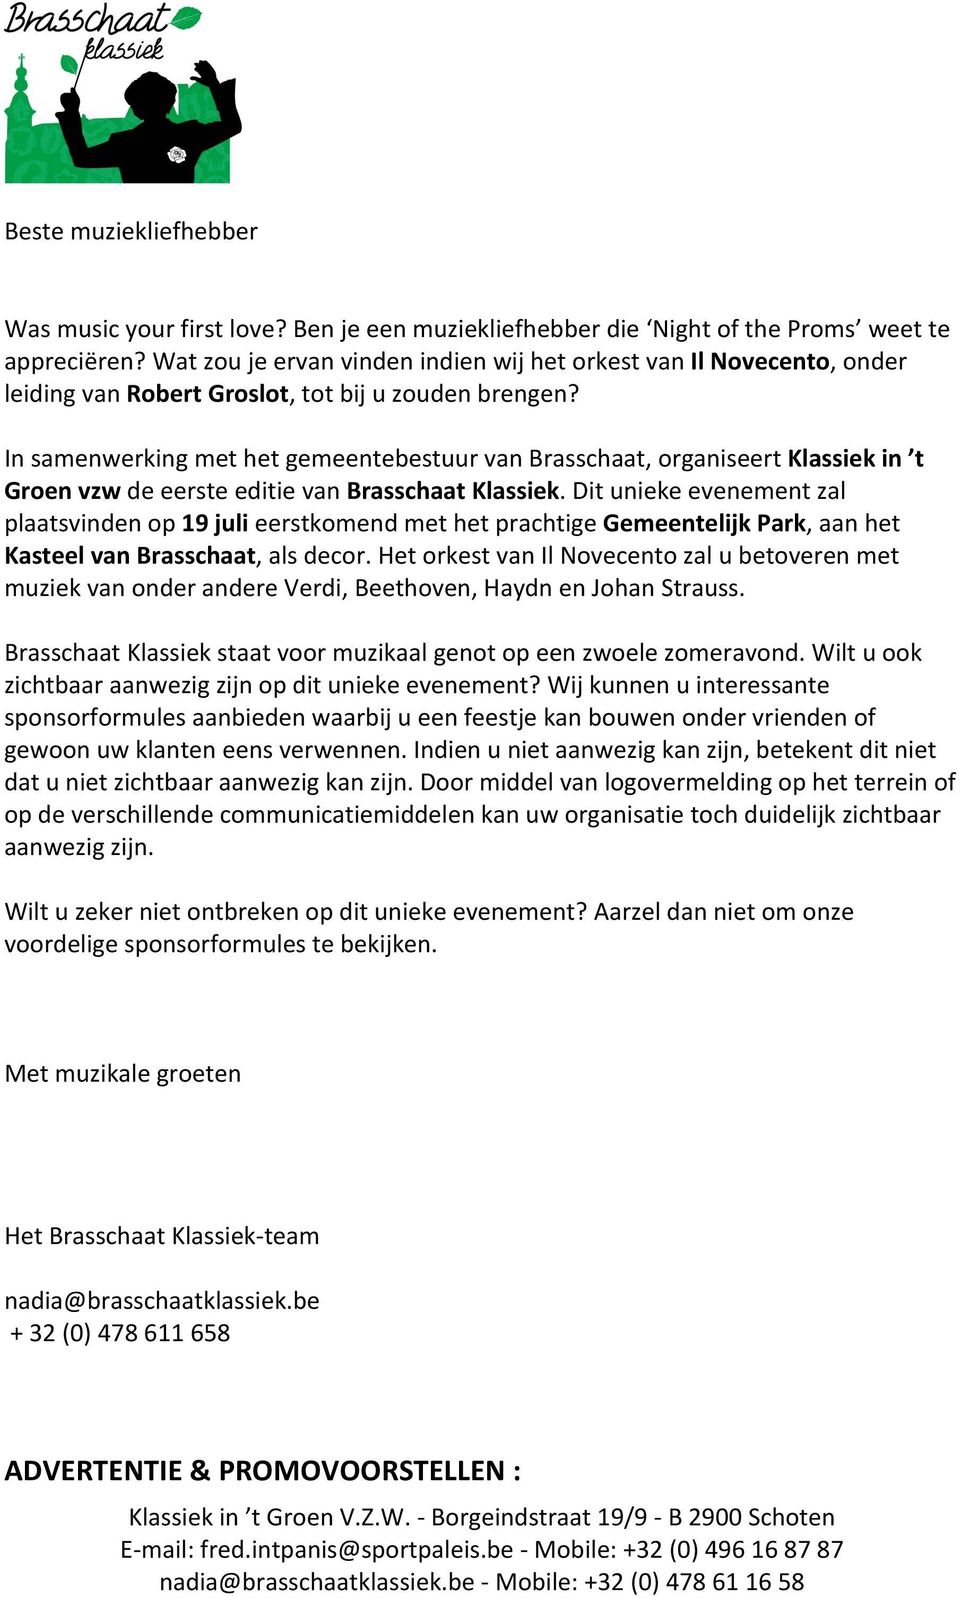 In samenwerking met het gemeentebestuur van Brasschaat, organiseert Klassiek in t Groen vzw de eerste editie van Brasschaat Klassiek.